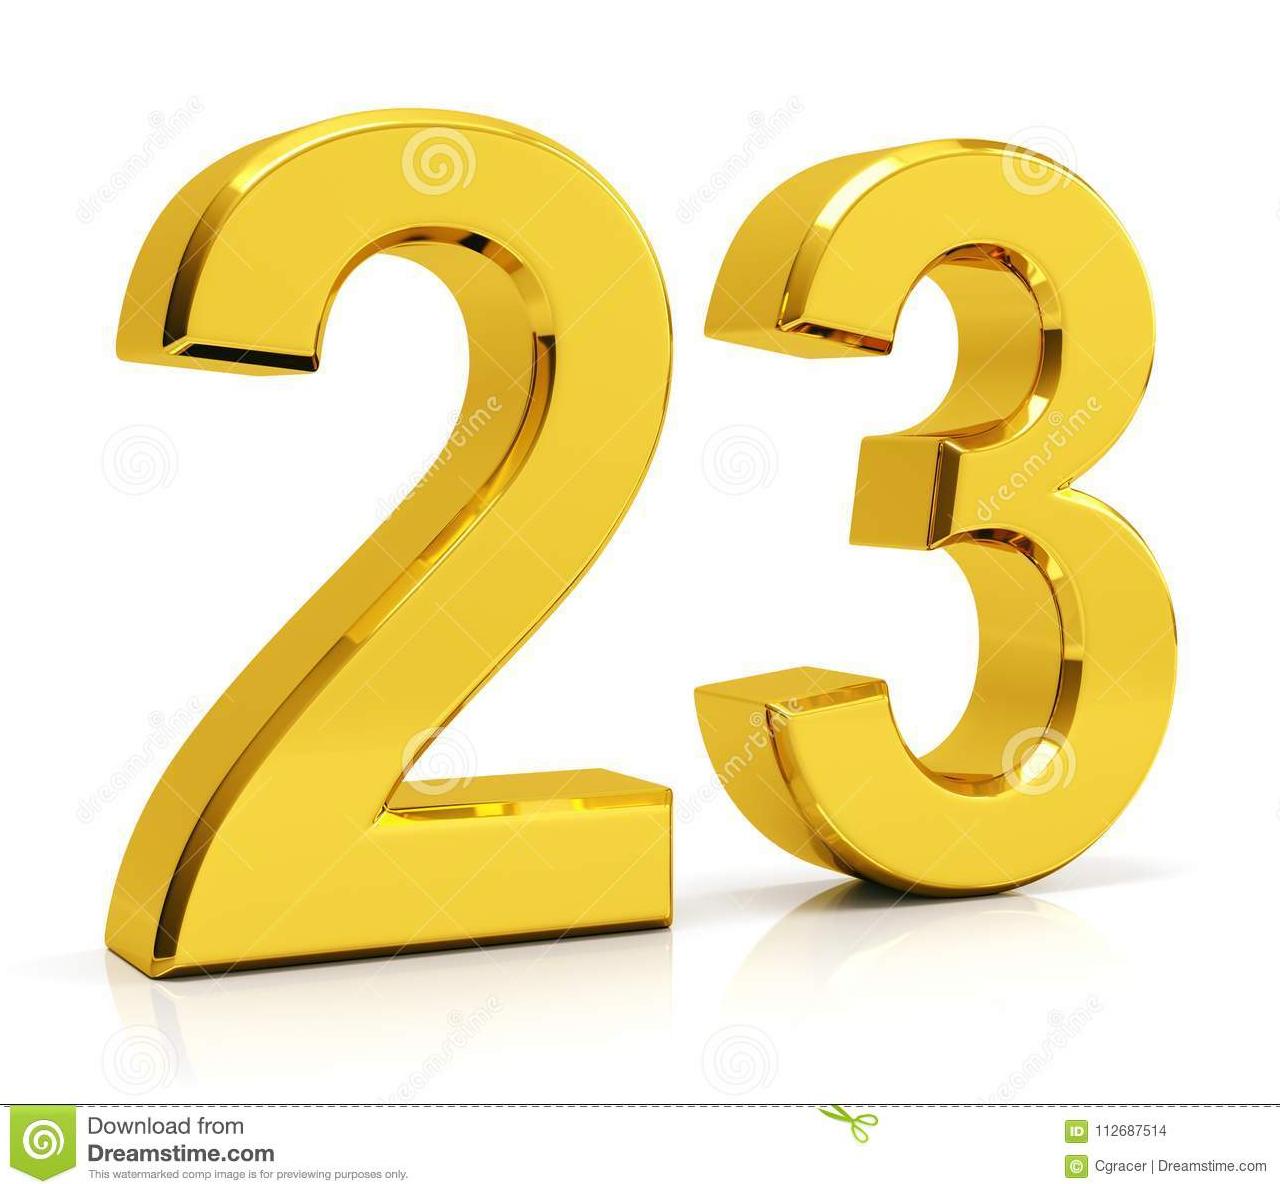 معنی اعداد 23 را کشف کنید